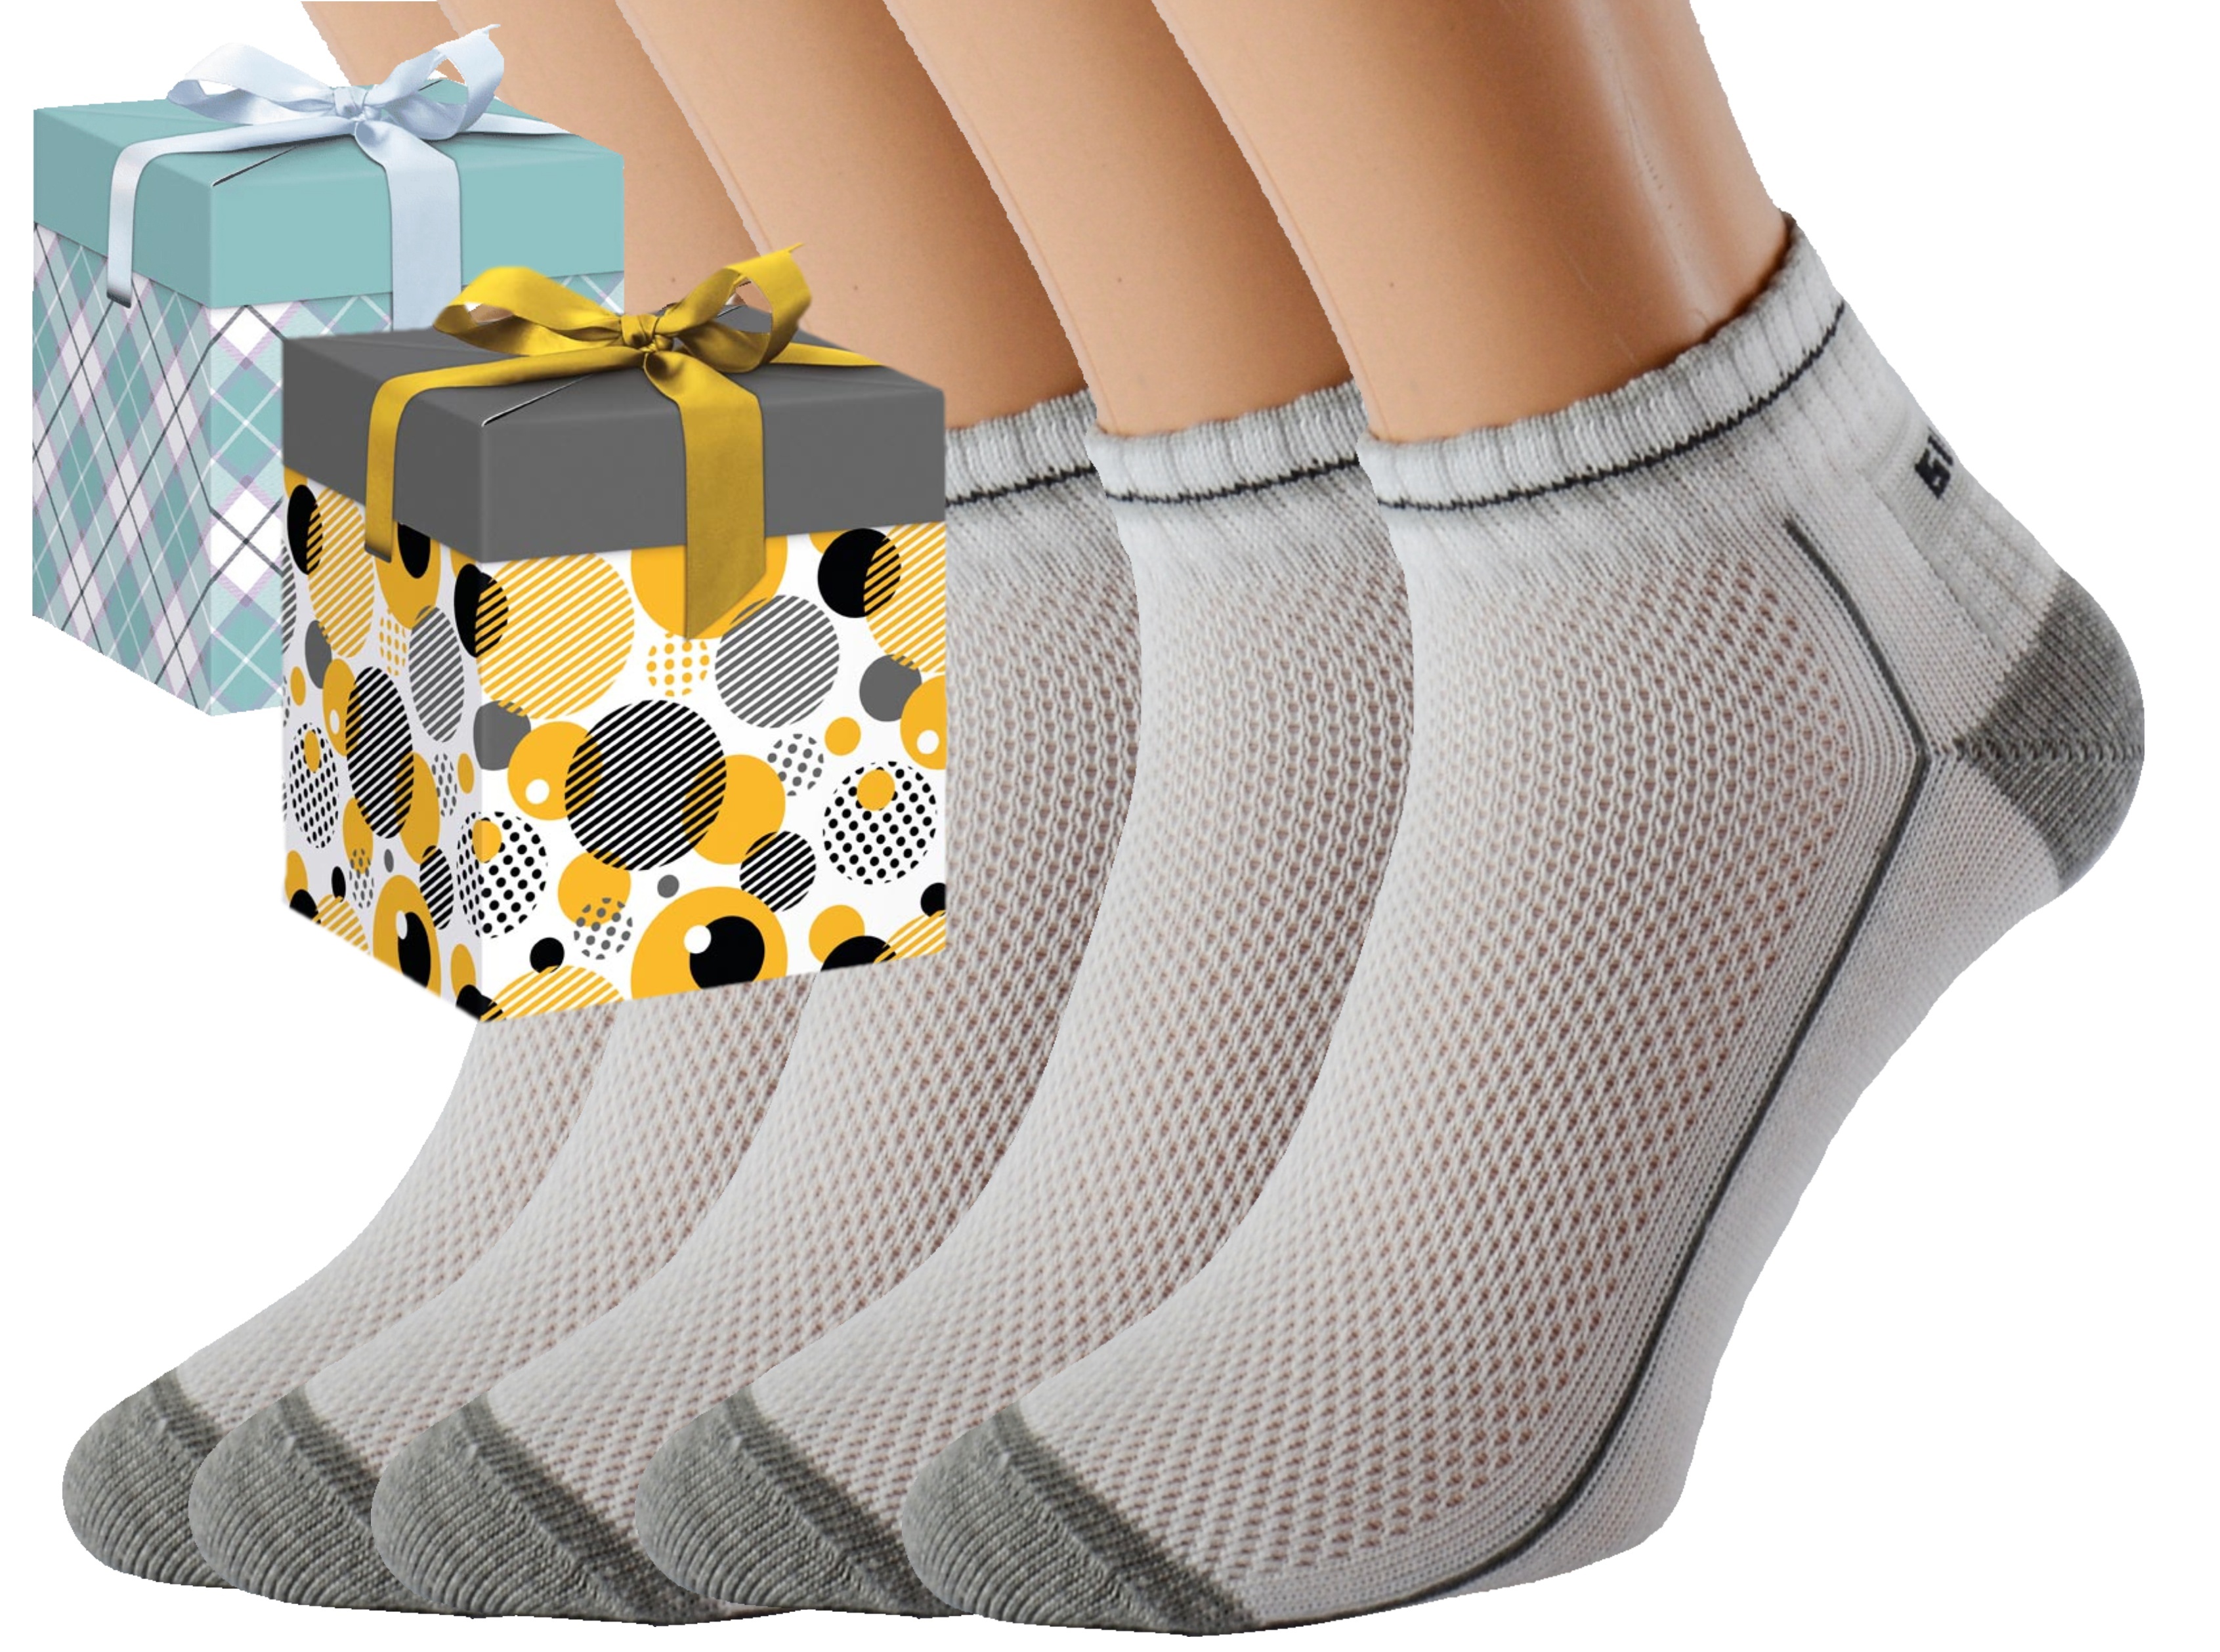 Dárkové balení 5 párů zdravotních ponožek EMIL Barva: Bílé, Velikost: EUR 46-48 (UK 11-12), Zvolte variantu dárkového balení: Mint kostkovaná